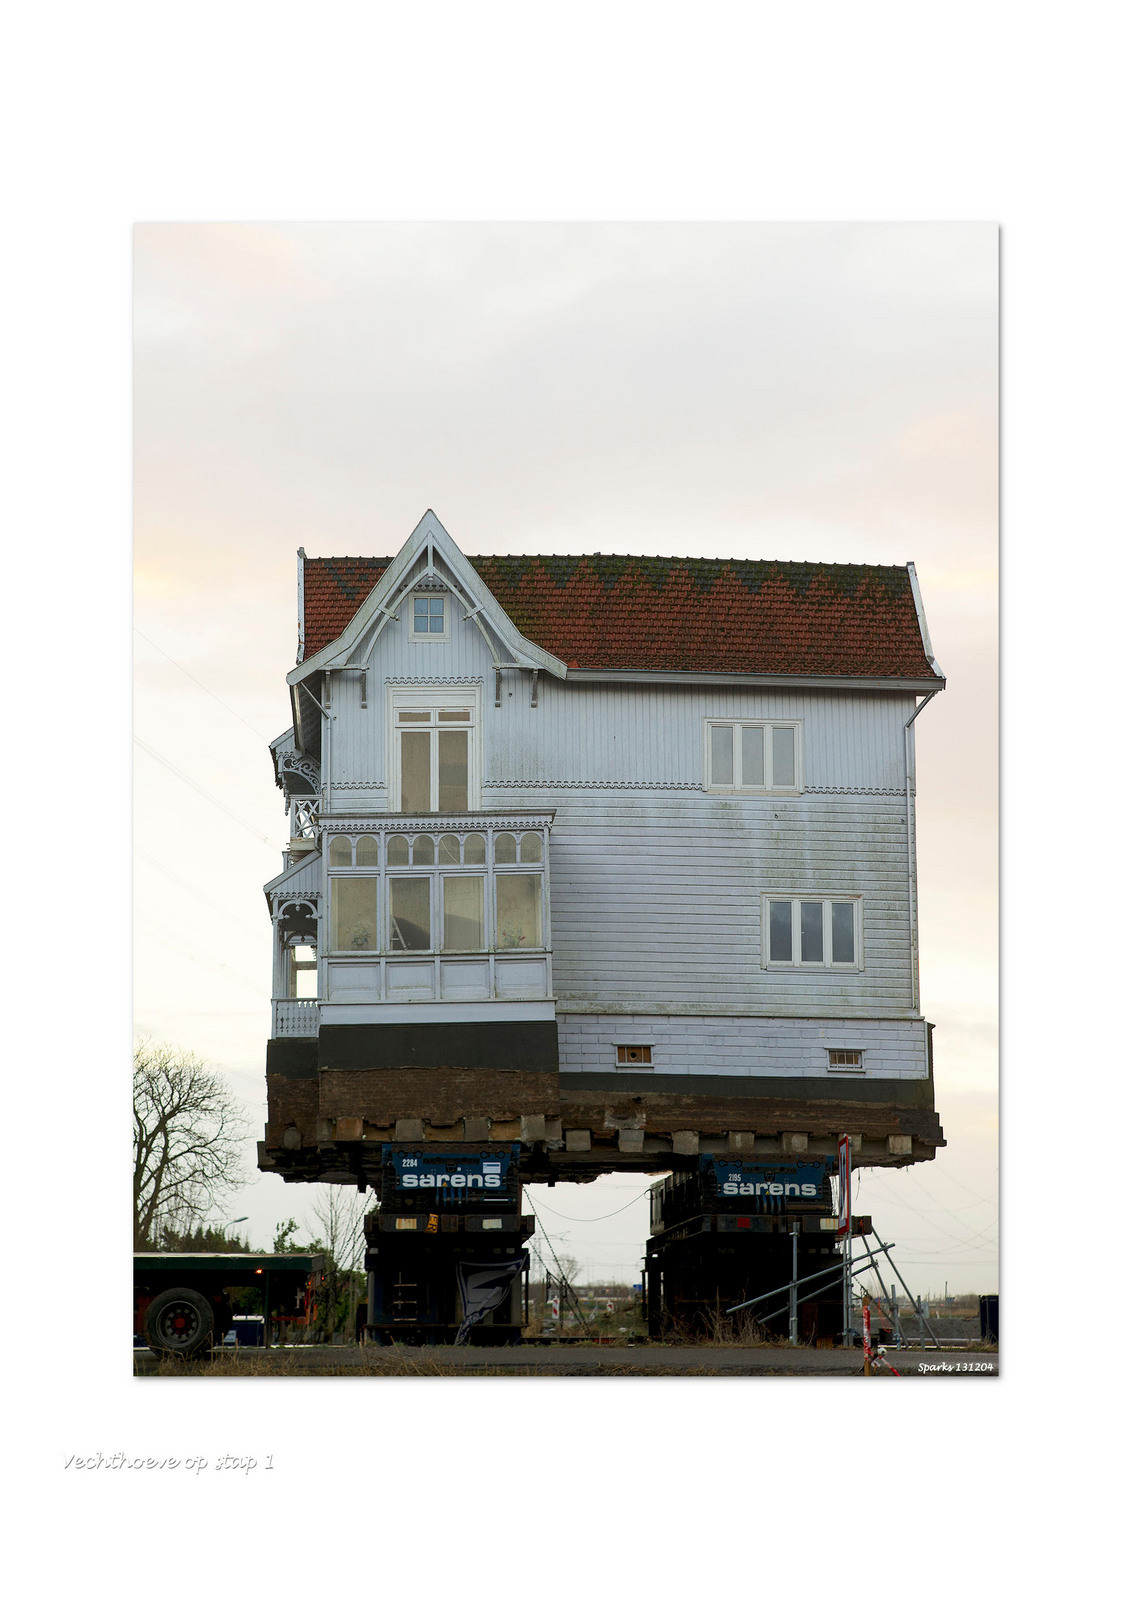 Picasso surfen Quagga huis op wielen - foto van sparks_zoom - Landschap - Zoom.nl